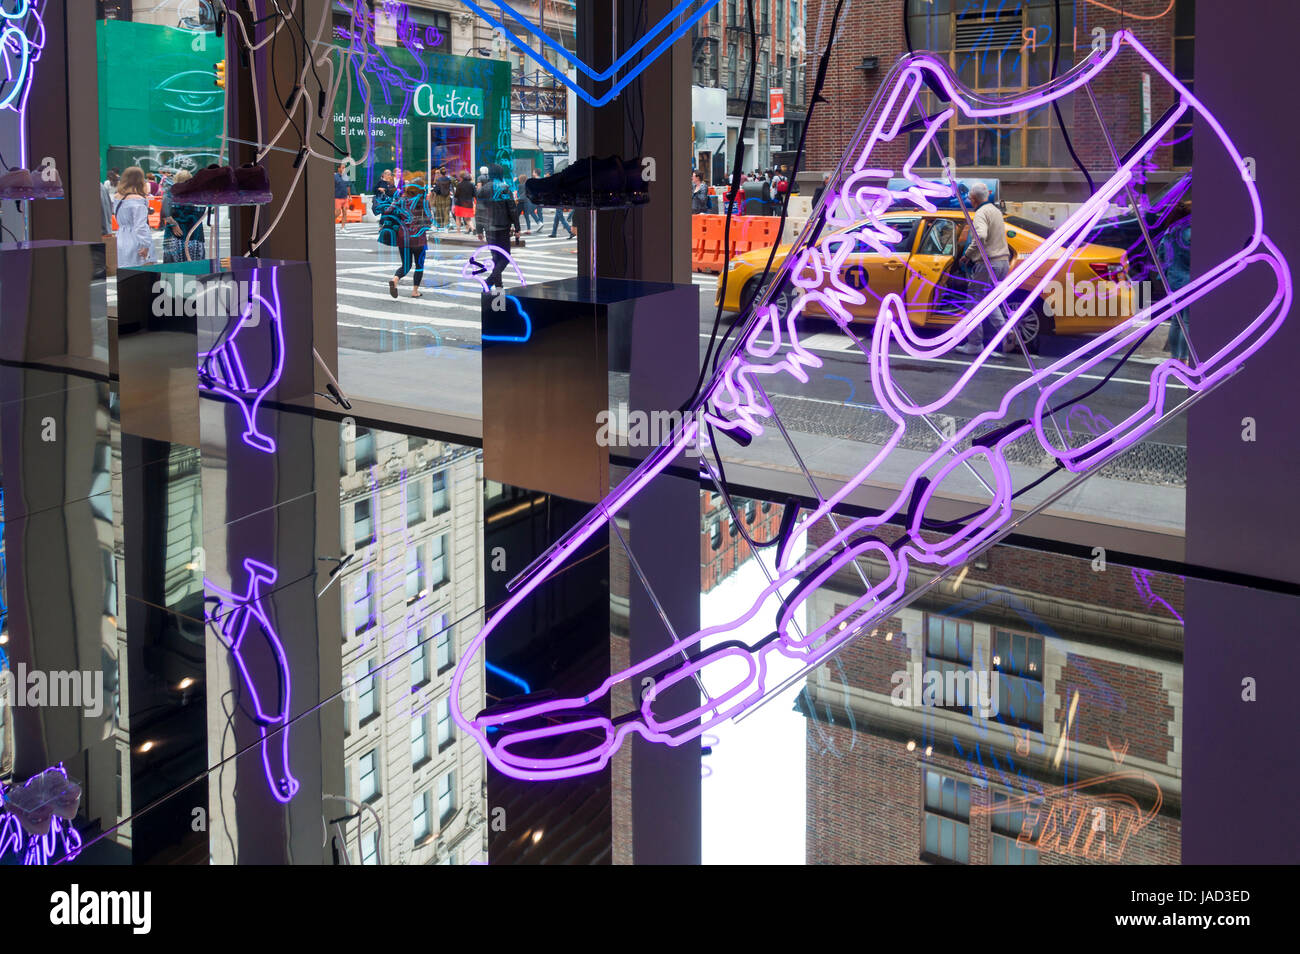 Un multilivello vista dall'interno del nike store showplace SoHo di New York City visualizza illustrazioni al neon, riflessioni e la vita sulla strada a molla Foto Stock